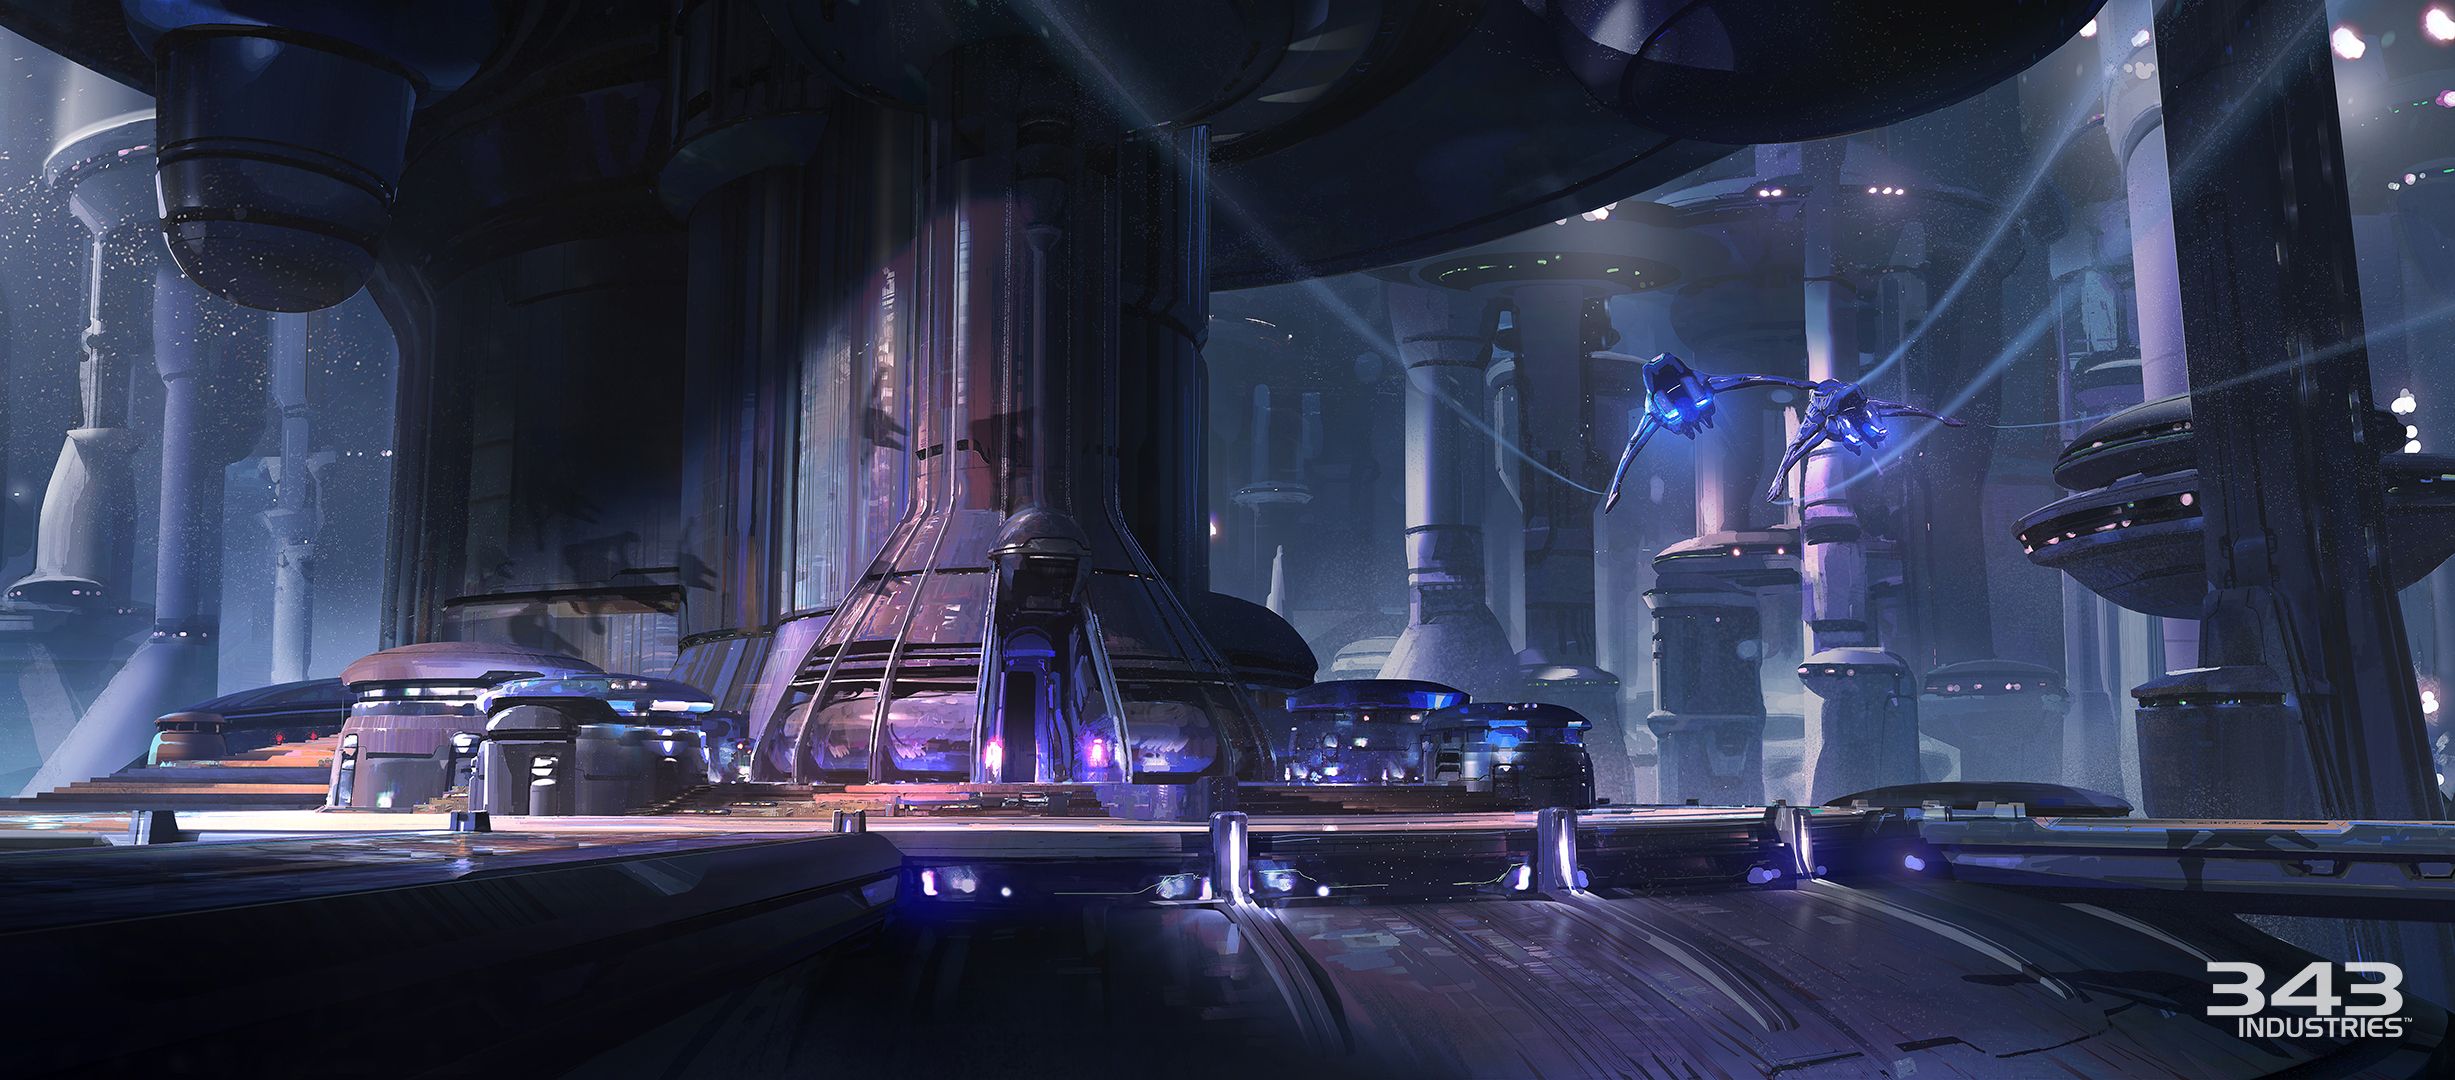 Descarga gratuita de fondo de pantalla para móvil de Halo 5: Guardians, Aureola, Videojuego.